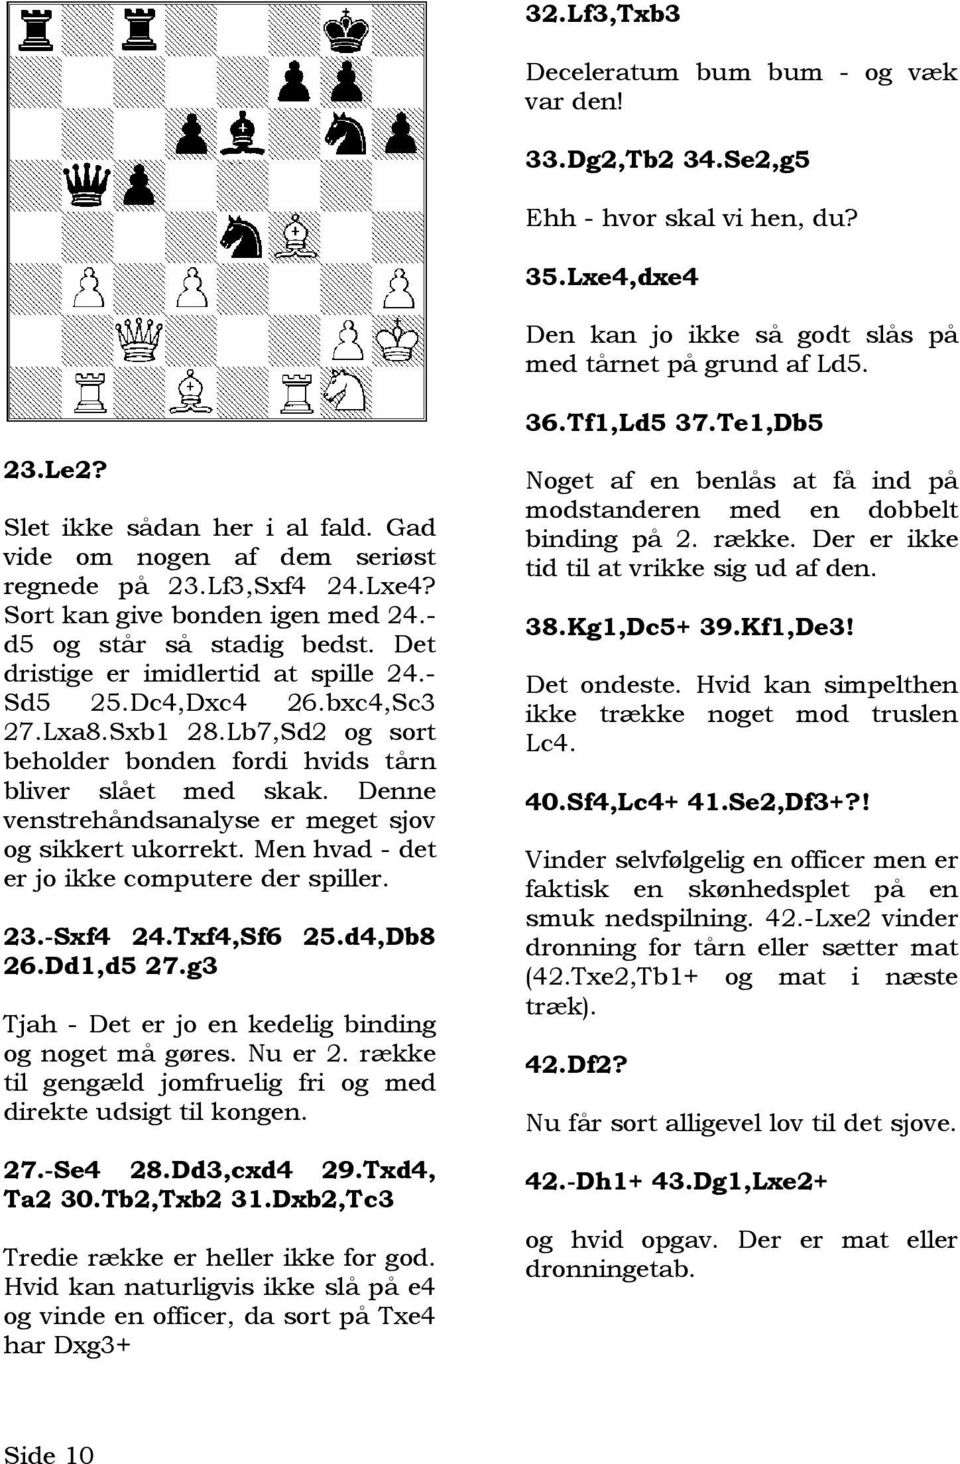 Det dristige er imidlertid at spille 24.- Sd5 25.Dc4,Dxc4 26.bxc4,Sc3 27.Lxa8.Sxb1 28.Lb7,Sd2 og sort beholder bonden fordi hvids tårn bliver slået med skak.